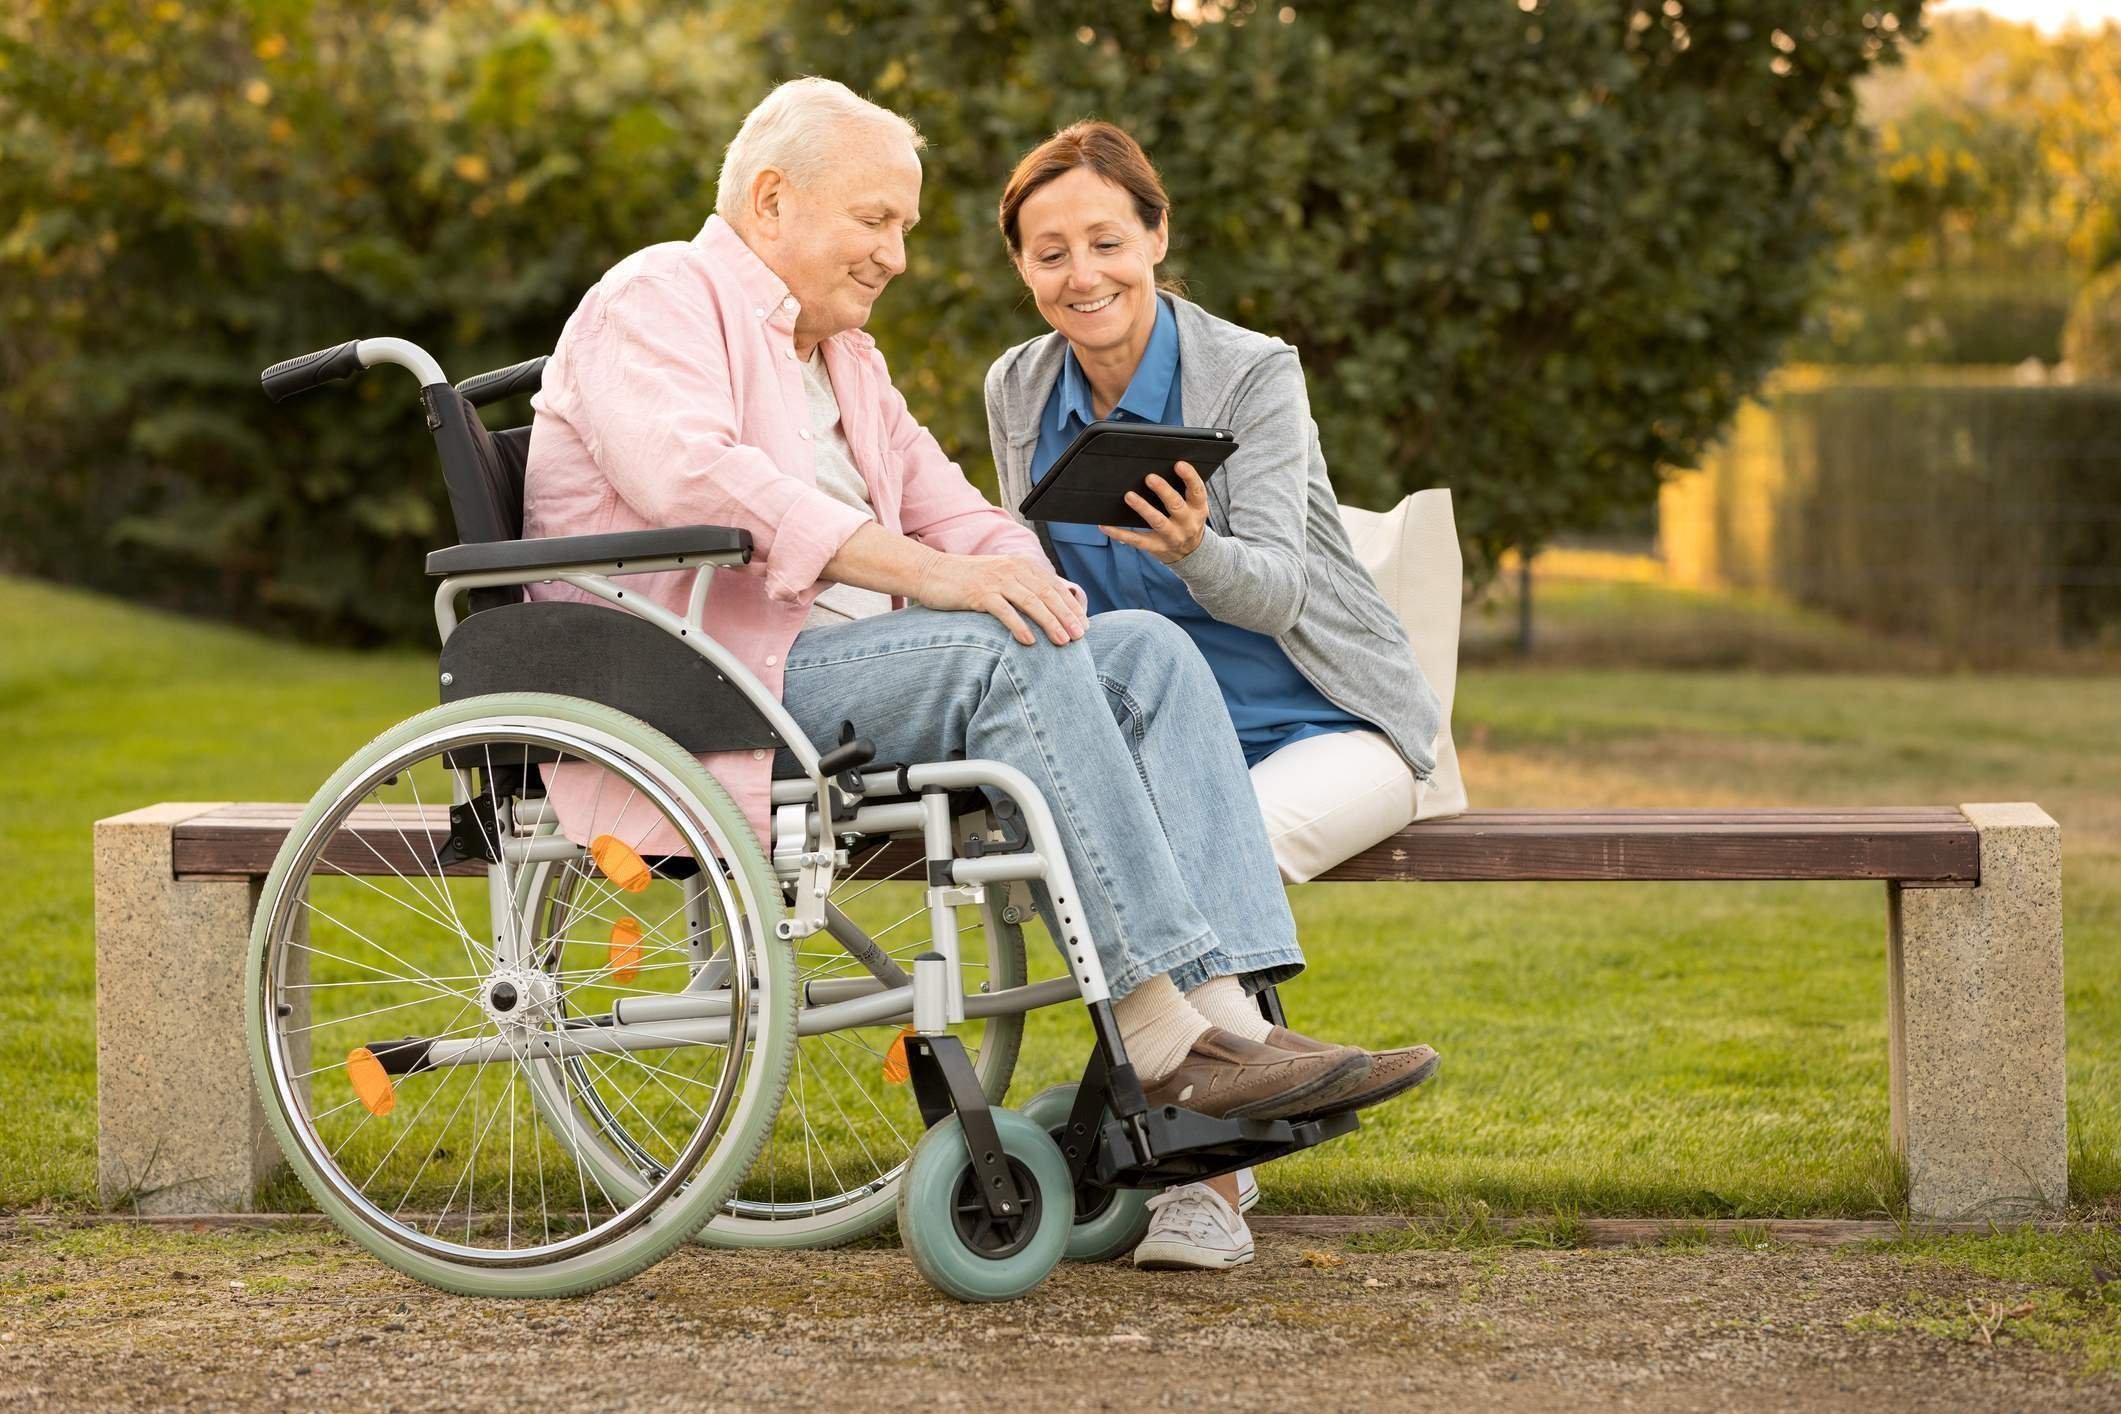 Социального обеспечения пожилых граждан. Люди с ограниченными возможностями. Пожилые и инвалиды. Пенсионеры инвалидная коляска. Коляска для пенсионеров.